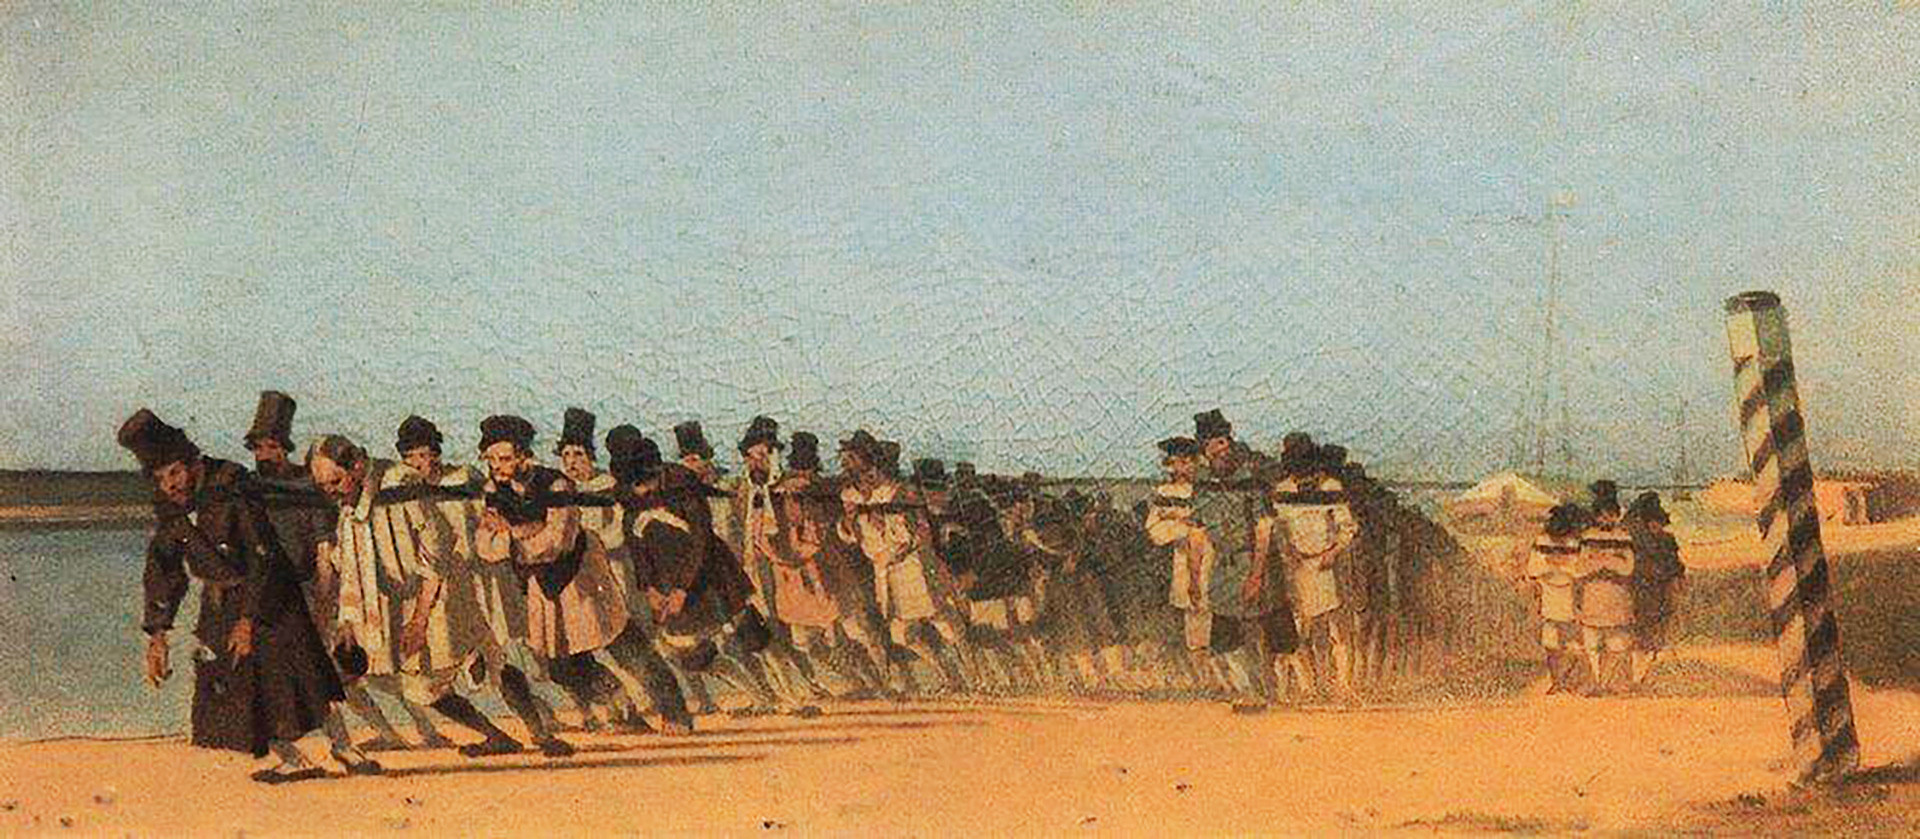 「船引き」（1866年）、ヴァシーリー・ヴェレシチャーギン画